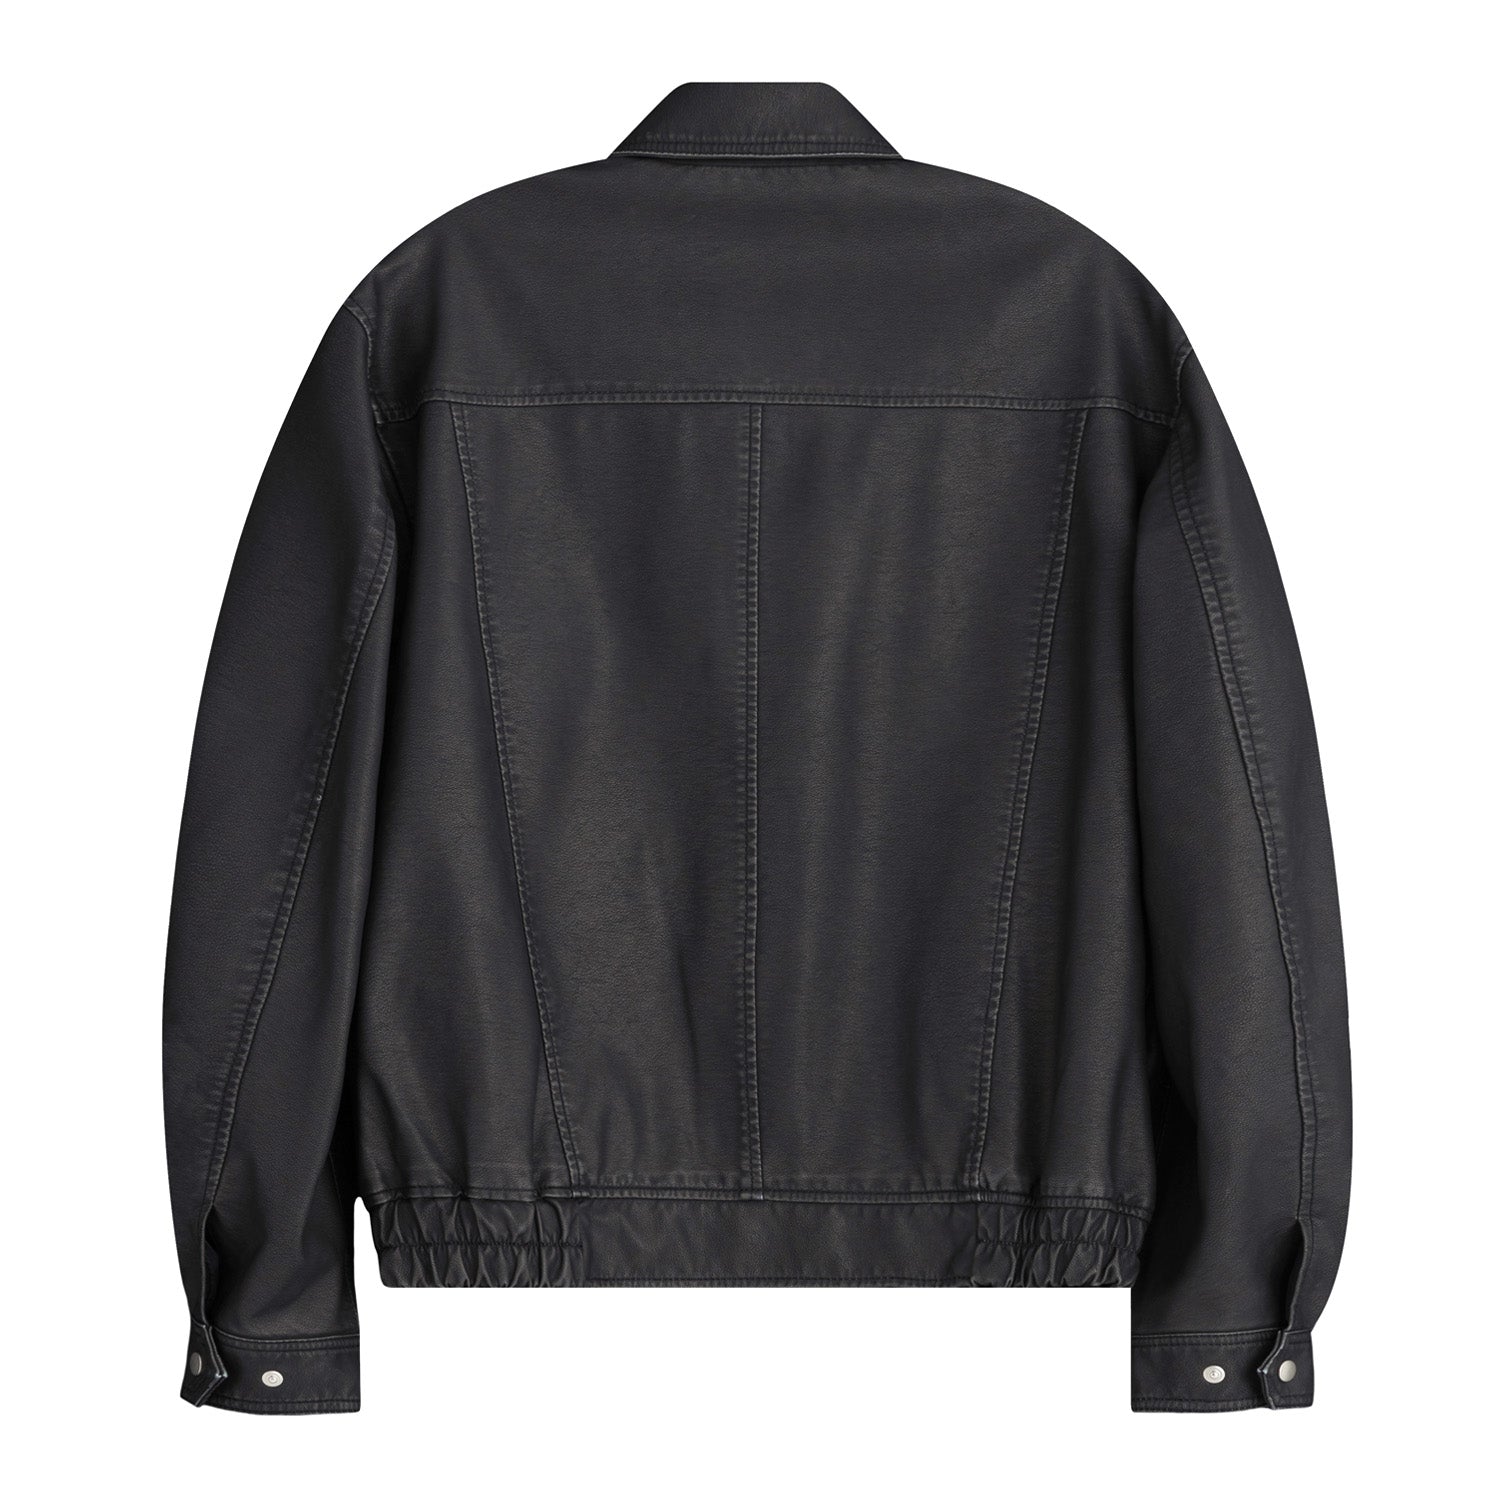 Overfit Washed Heritage Jacket (Black)